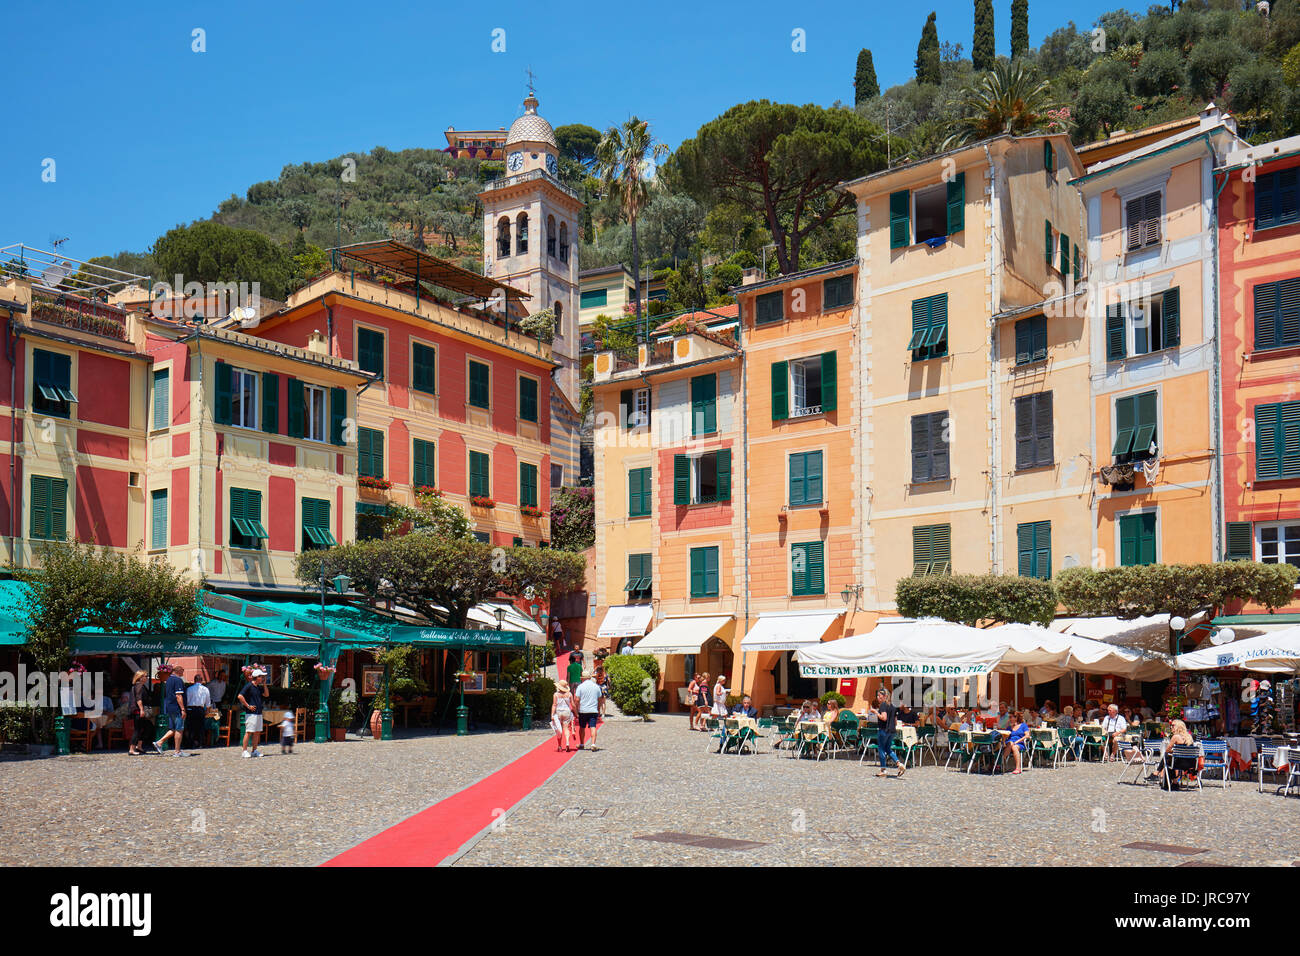 Portofino tipica bella piazza del villaggio con case colorate e lussuosi negozi in Italia Foto Stock